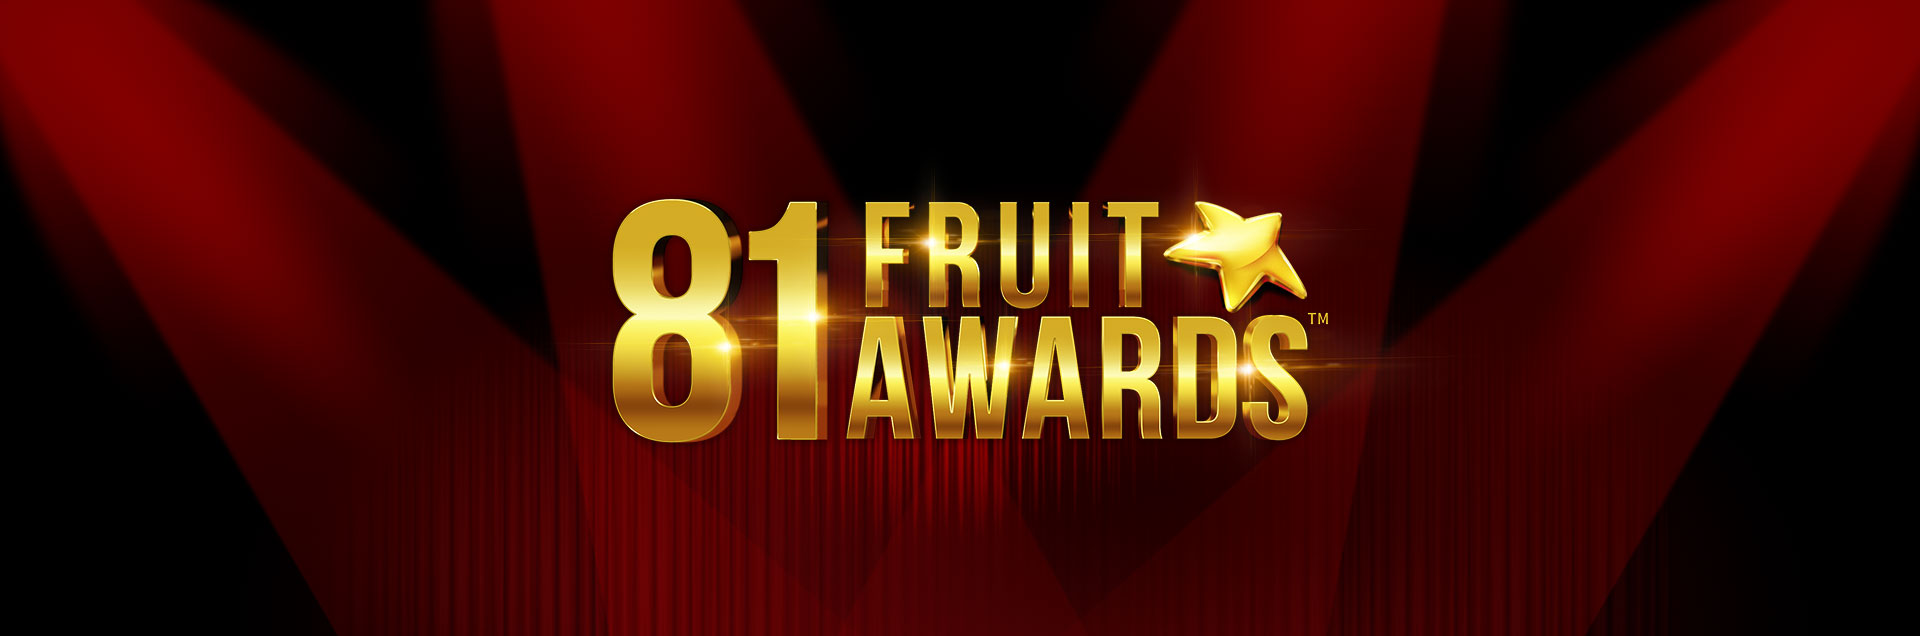 Fruit Awards 81 header games banner